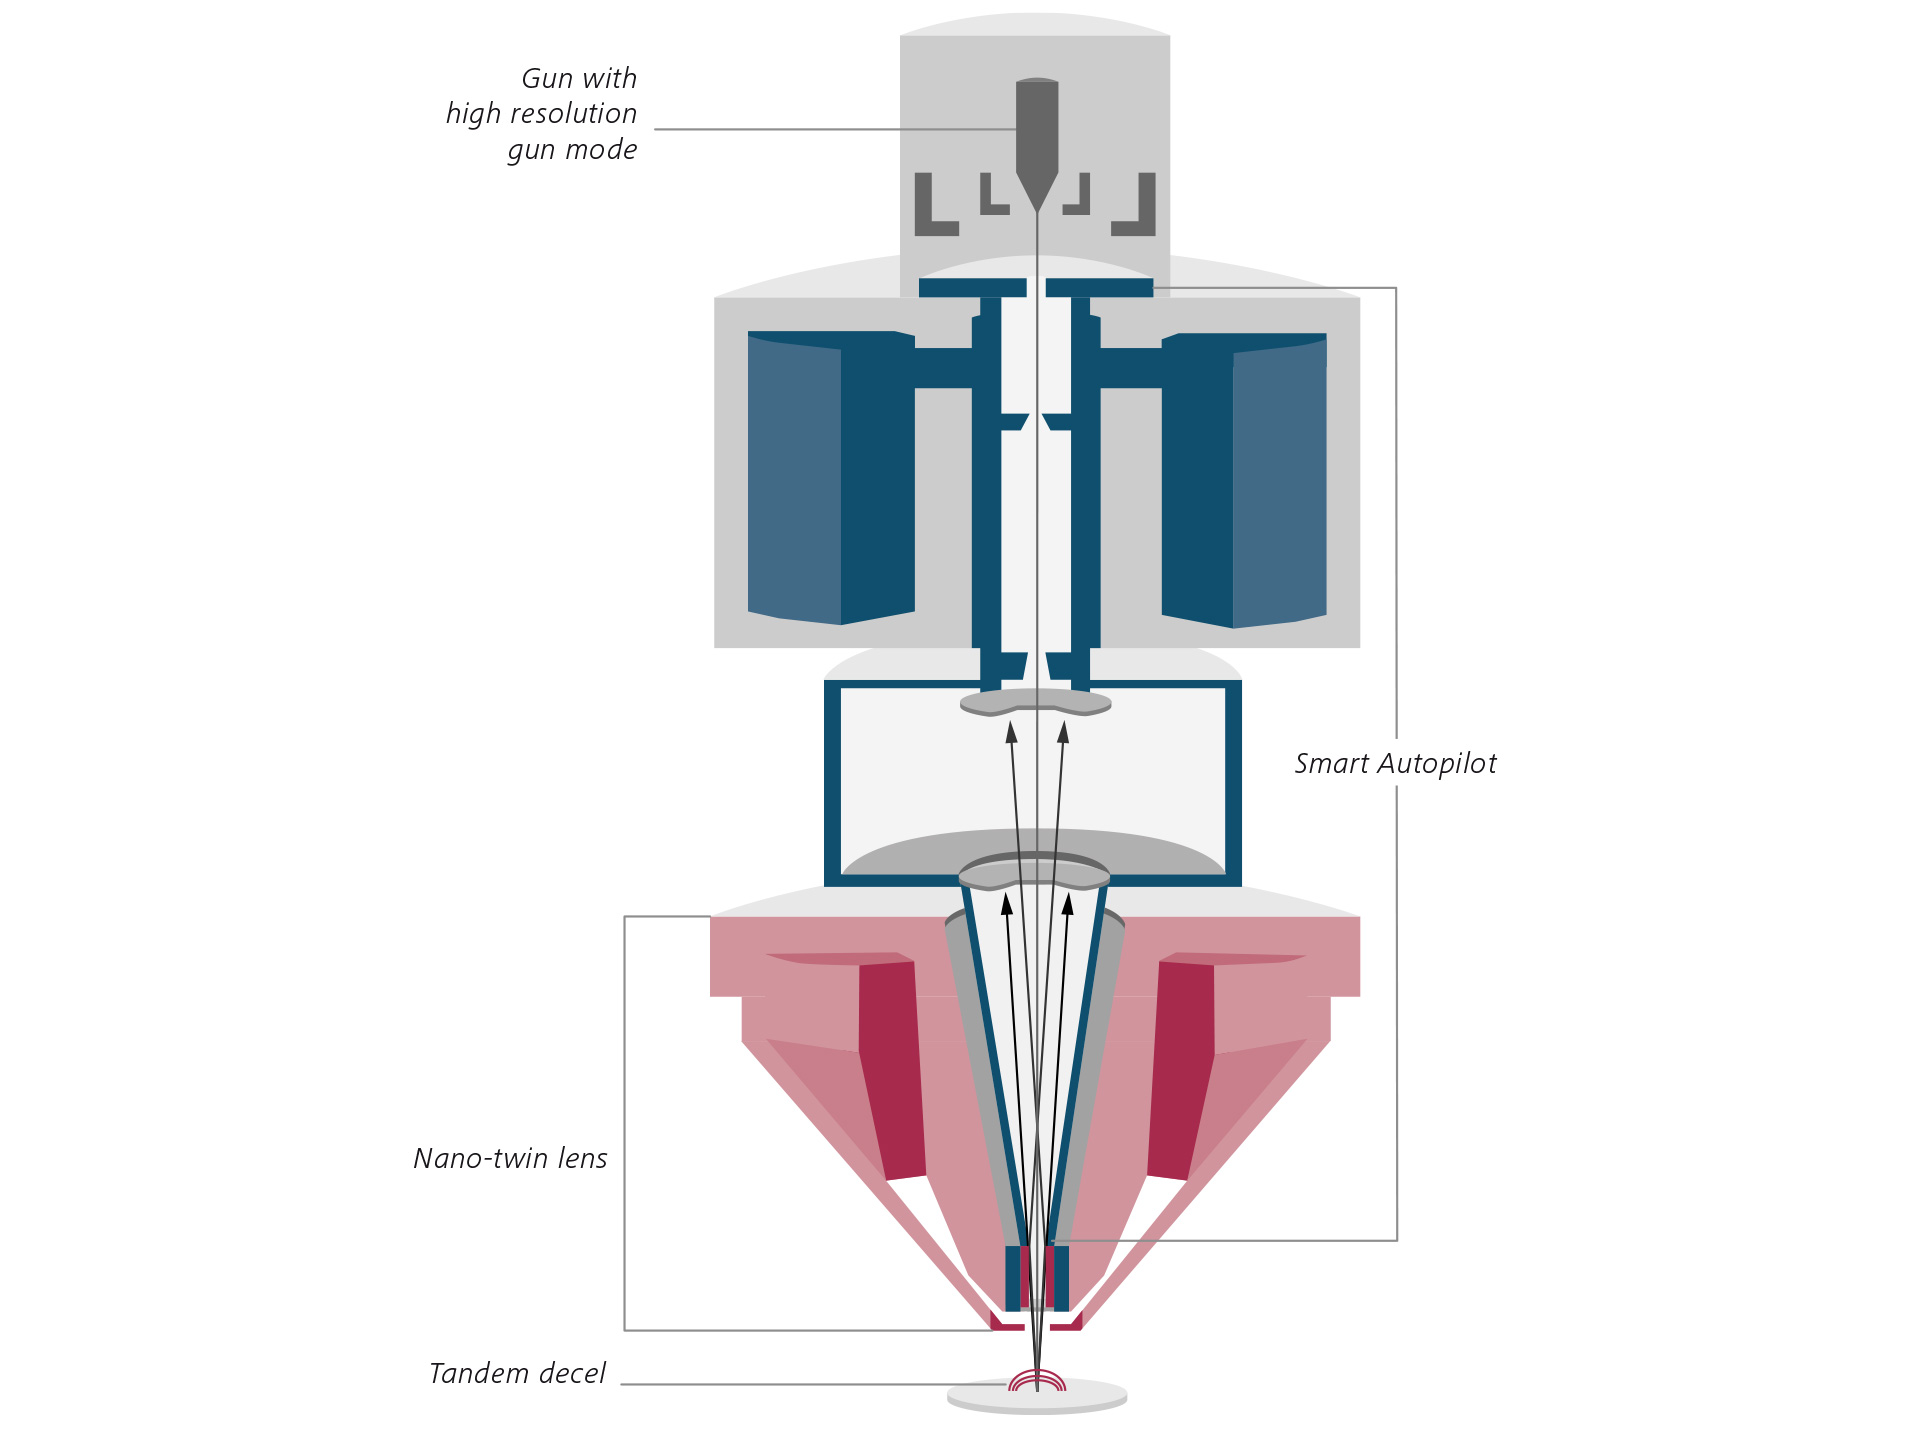 Gemini 3镜筒的全新光学设计。GeminiSEM 560的截面示意图。Nano-twin物镜（红色），Smart Autopilot（蓝色）。 